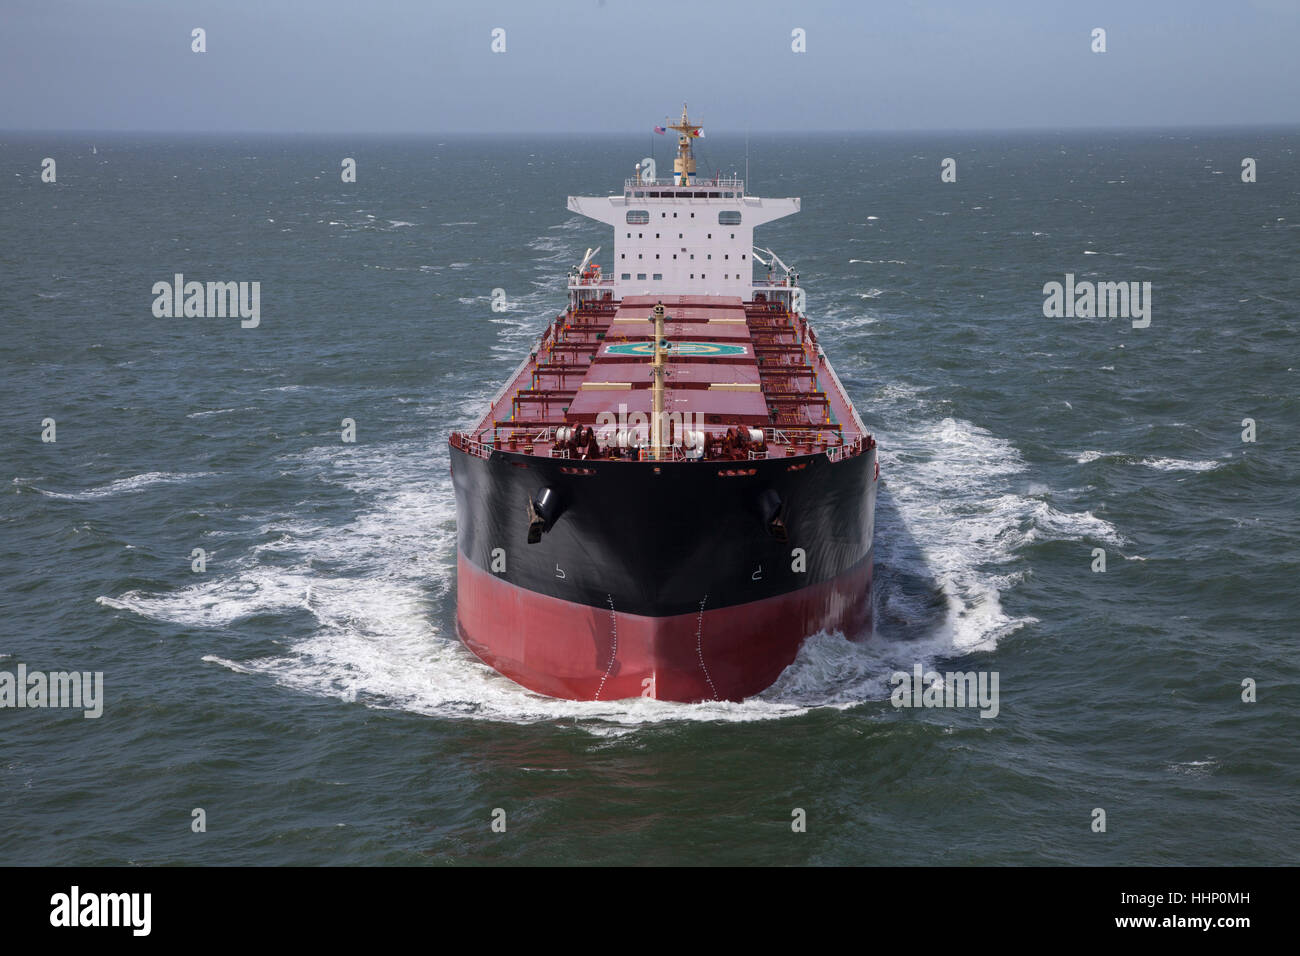 Freighter in ocean Stock Photo